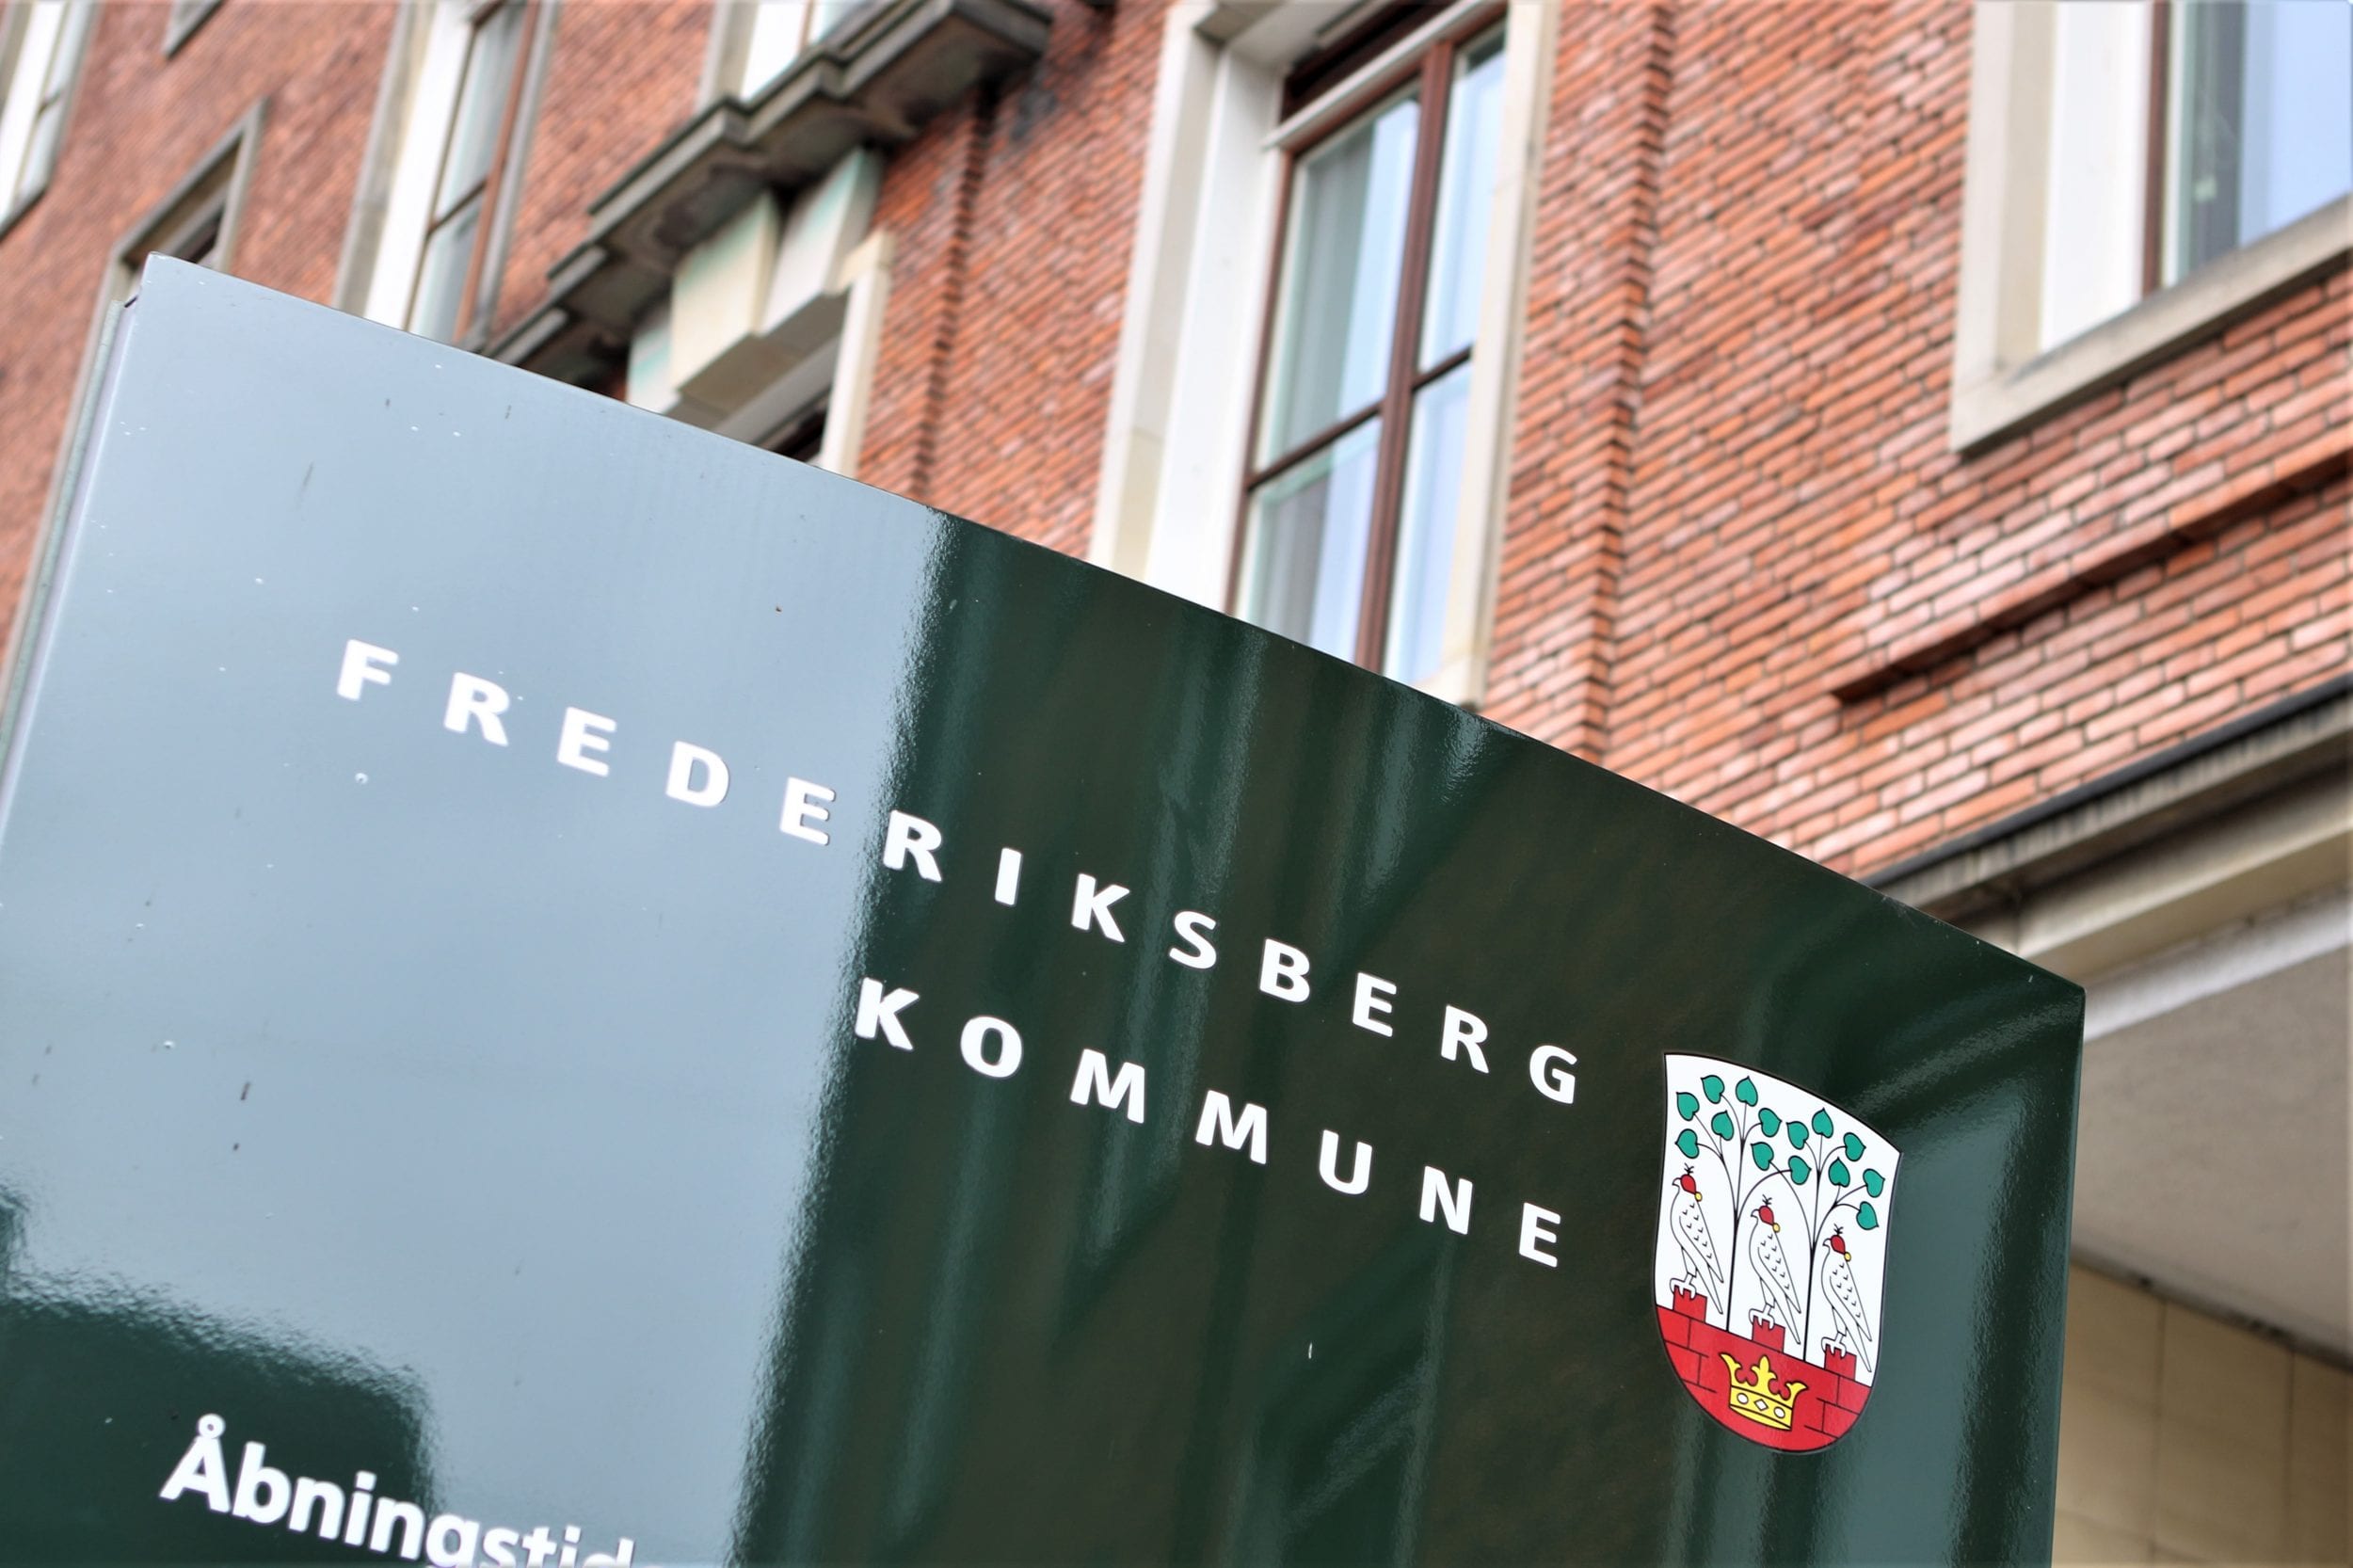 Frederiksberg spørger borgerne